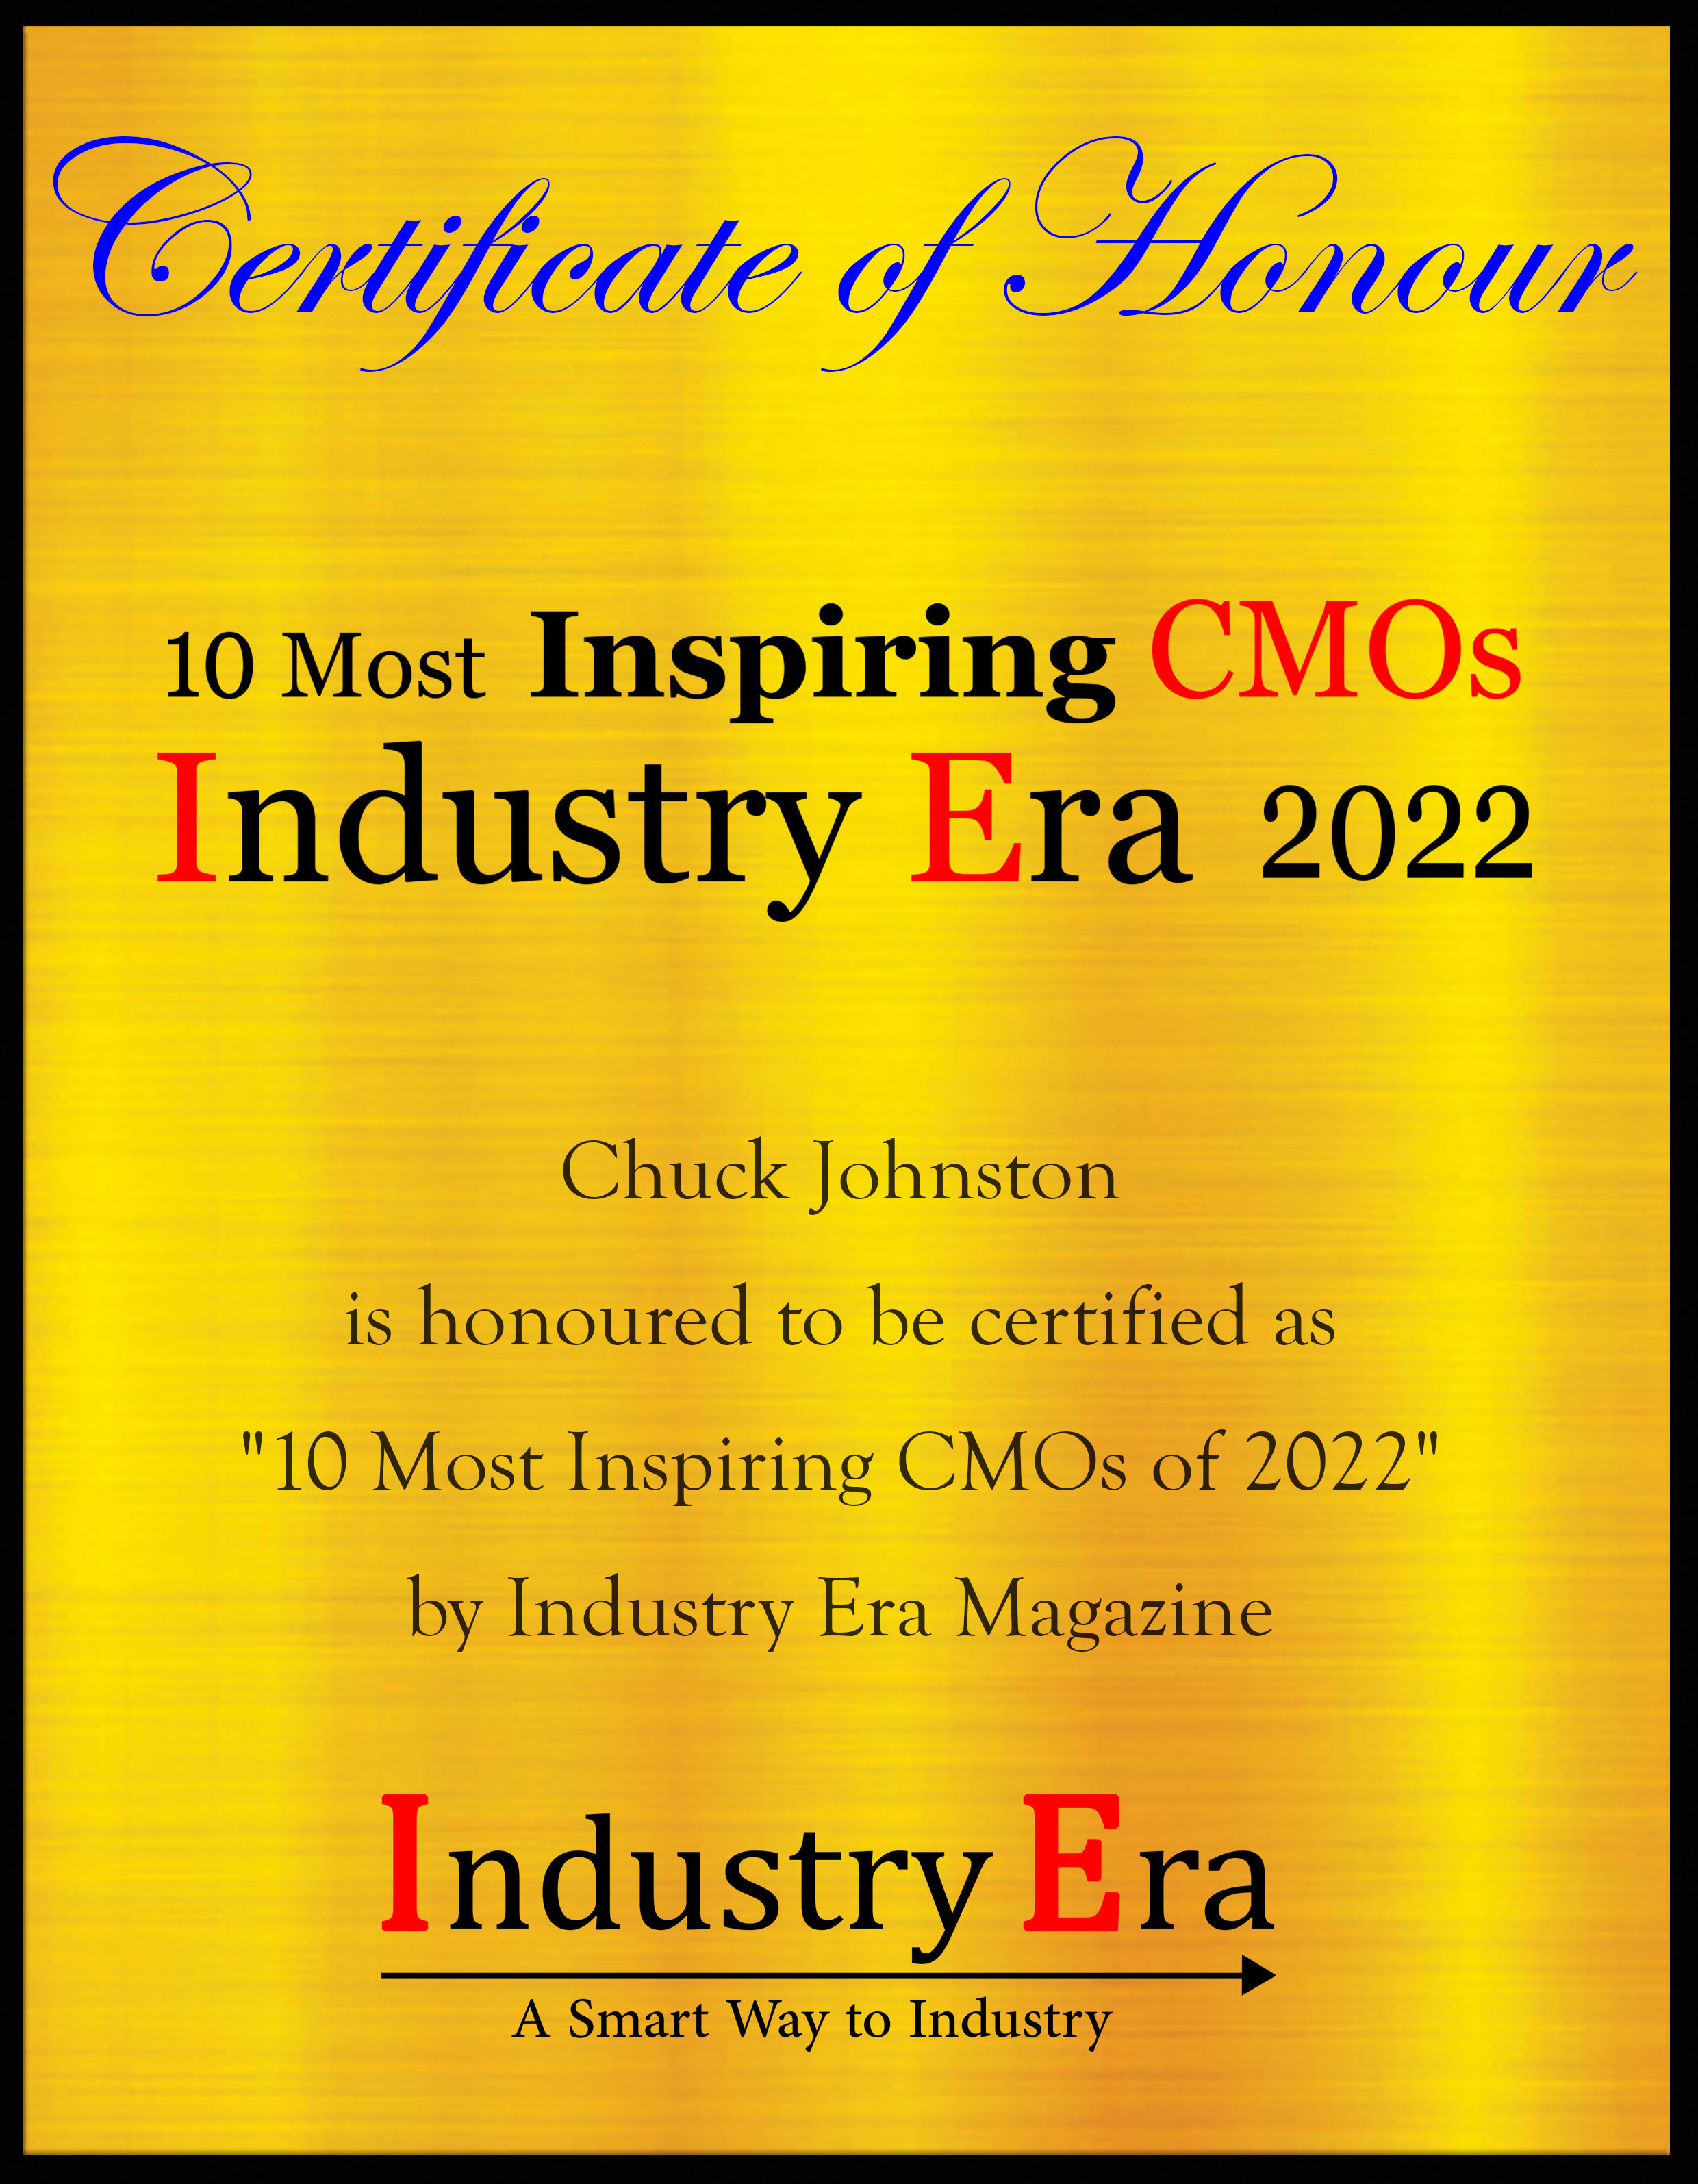 Chuck Johnston, CMO of FINEOS Certificate